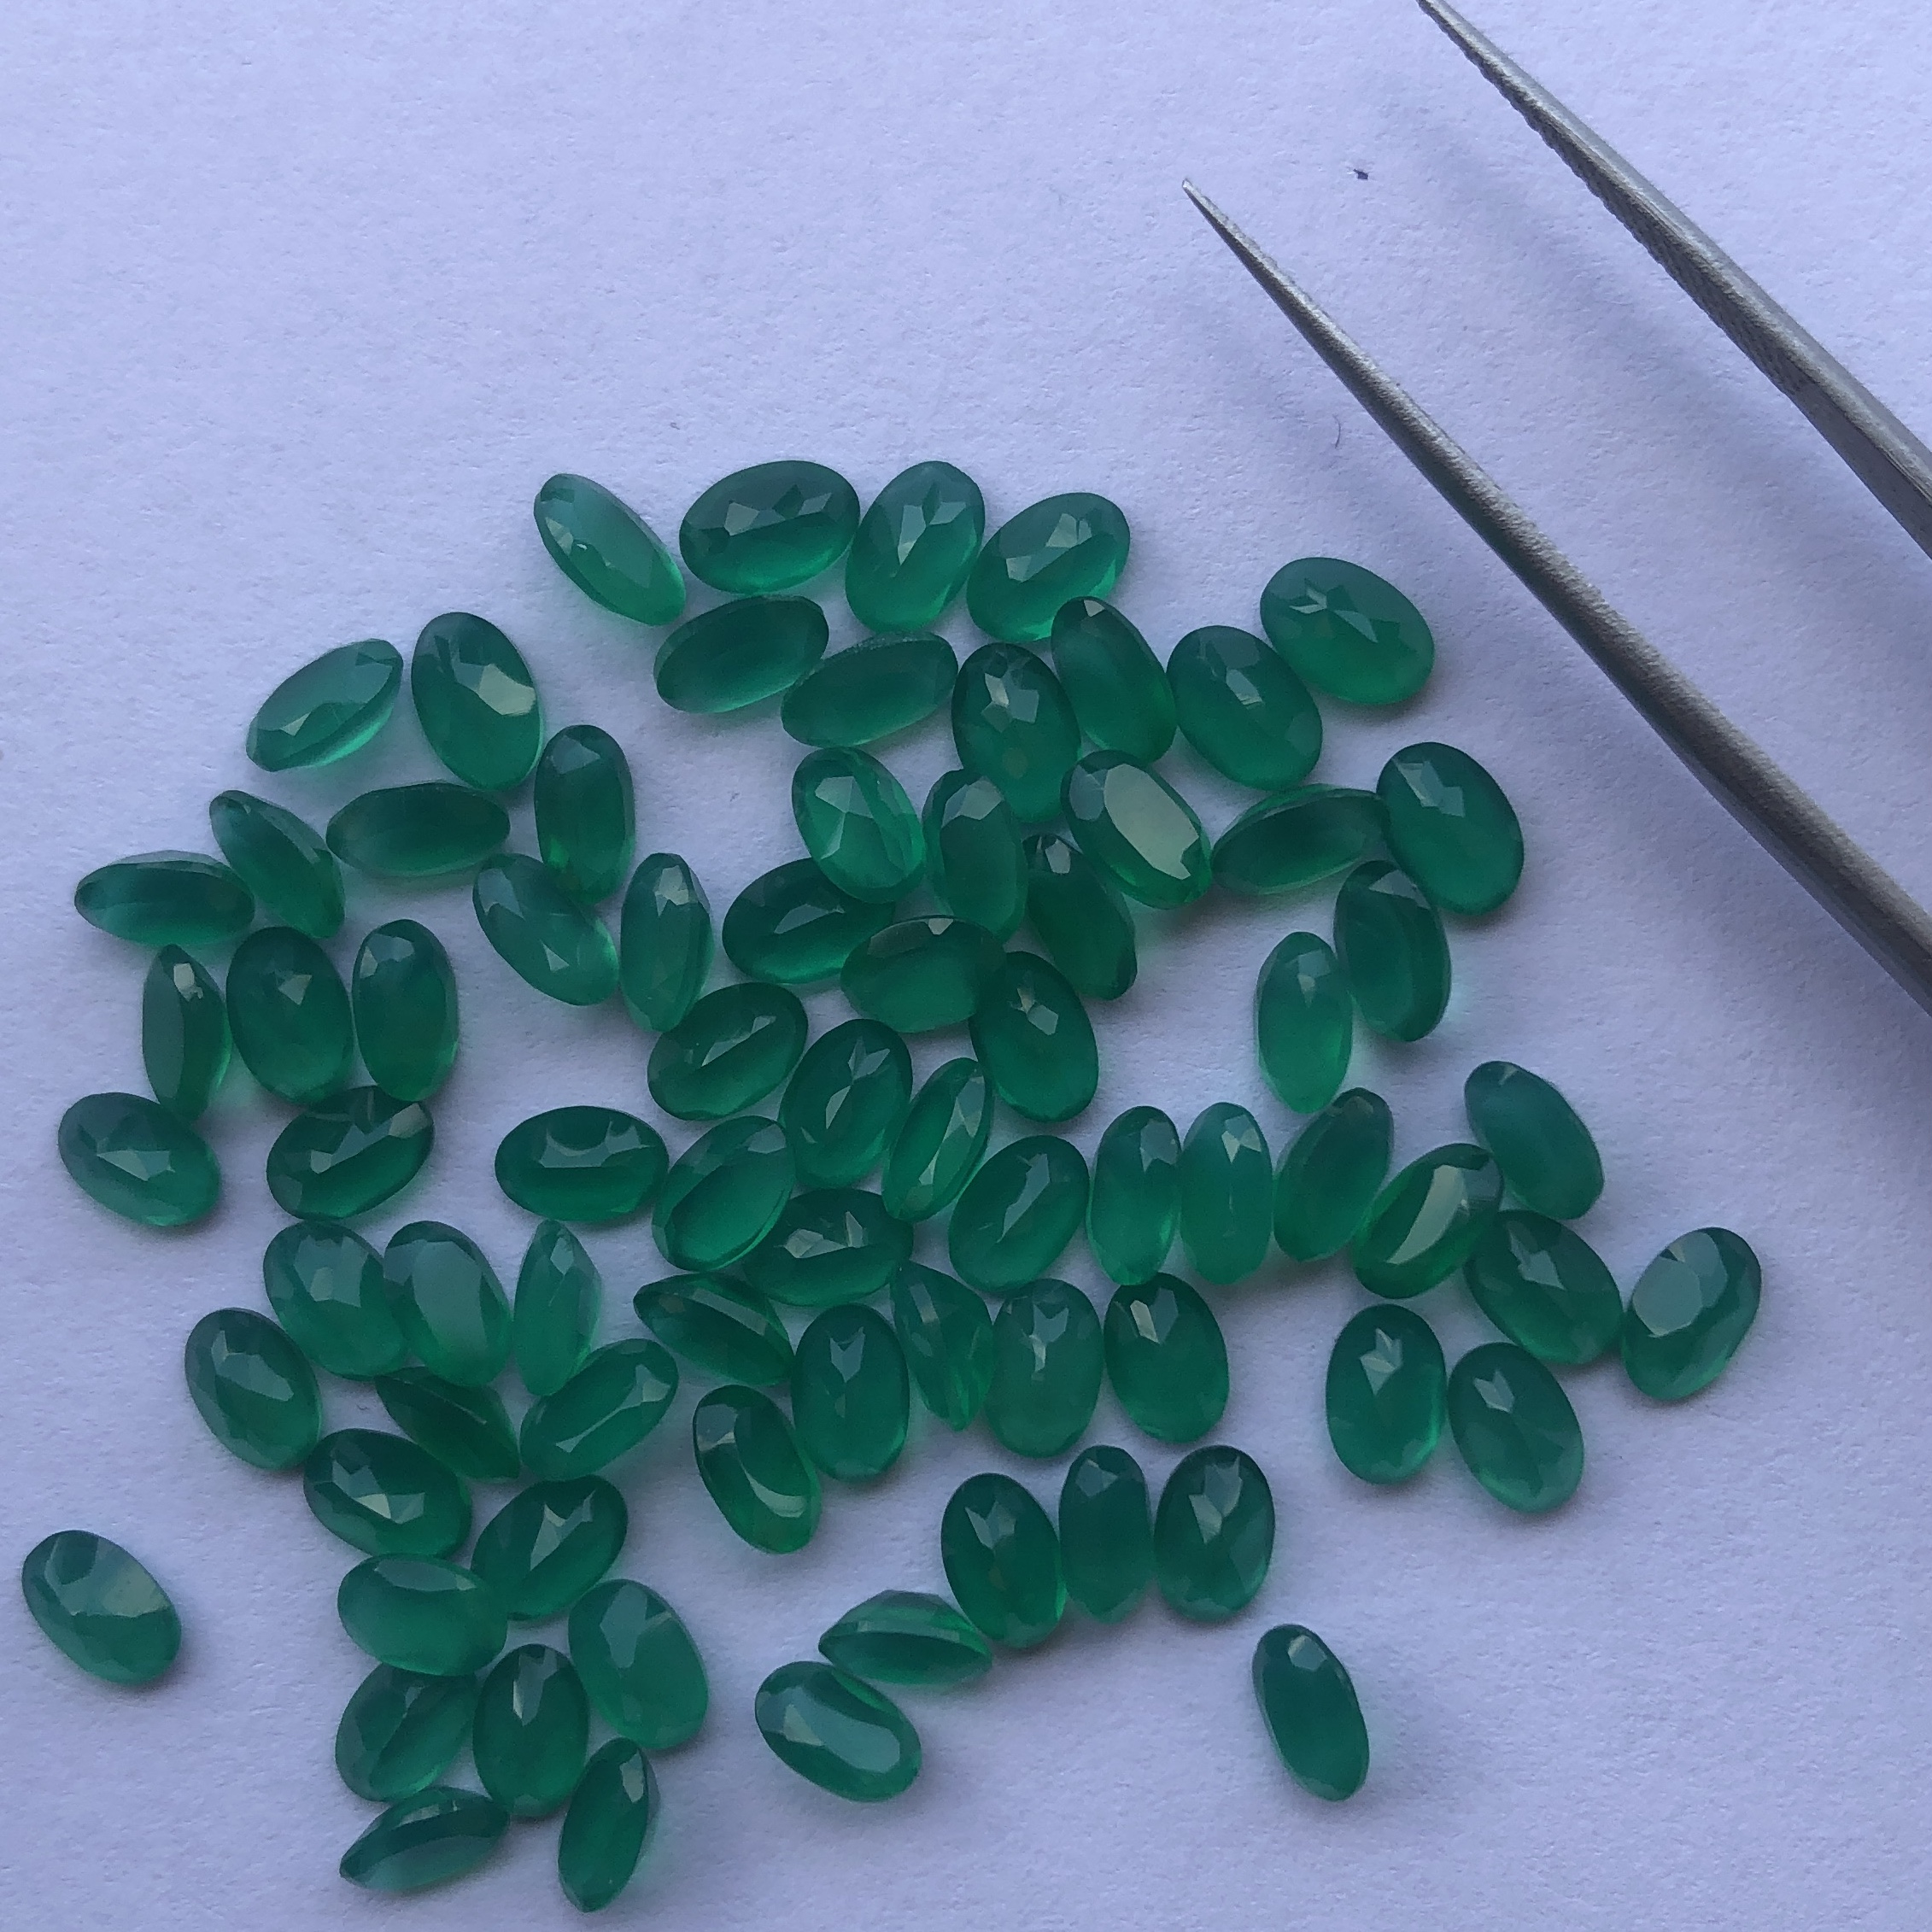 green onyx gemstone